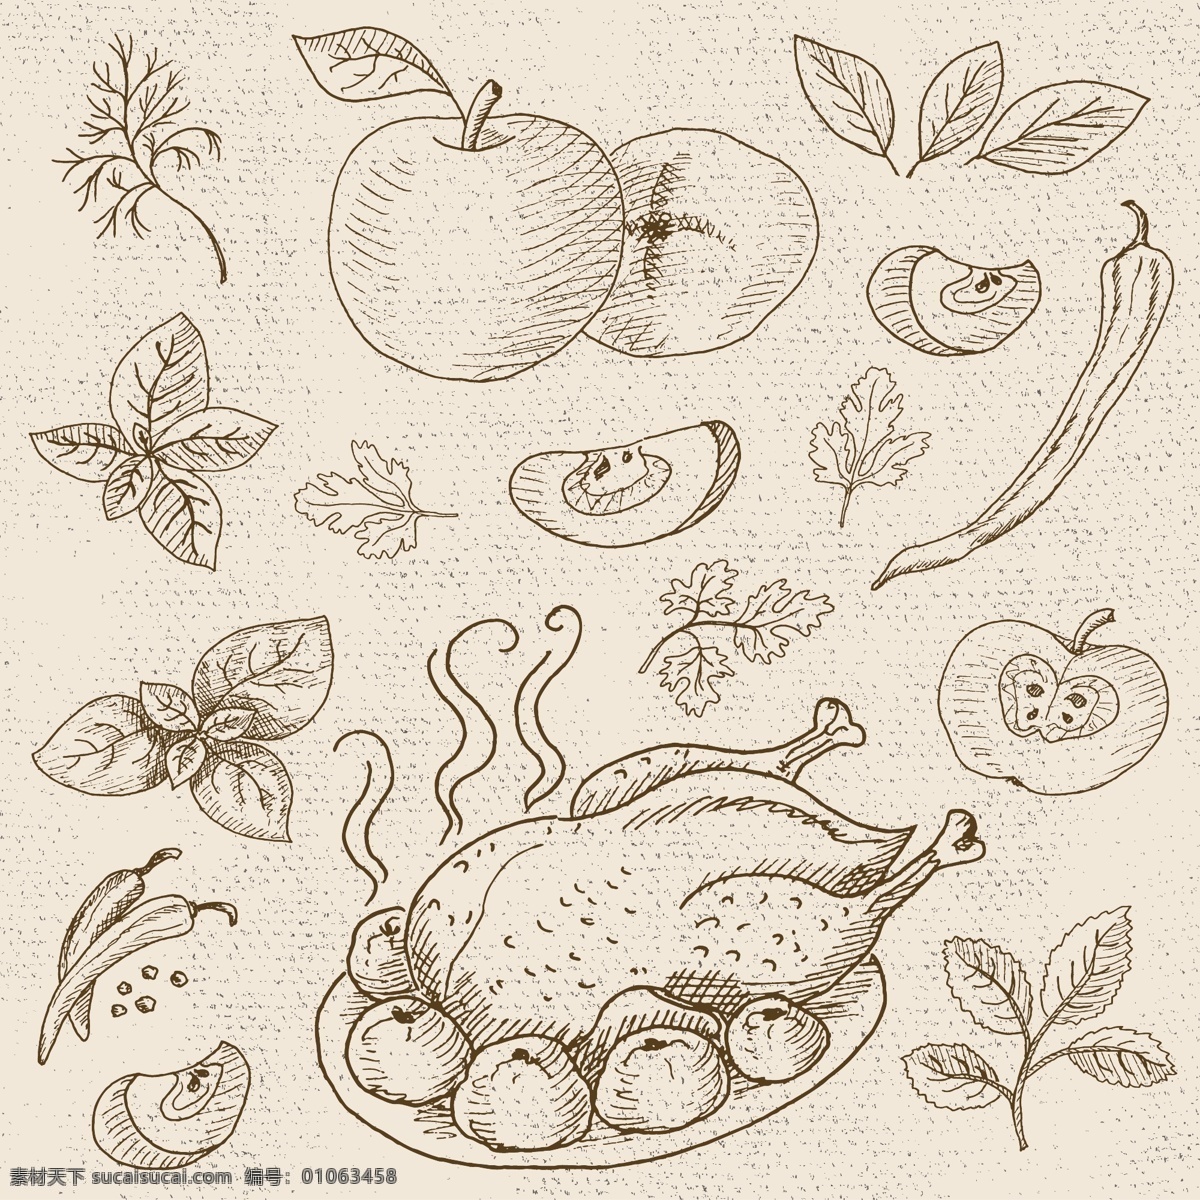 烤鸡 苹果 烹饪 饮食 矢量 合集 桃子 水果 黑板 手绘 英文 插画 线条 卡通 蔬菜